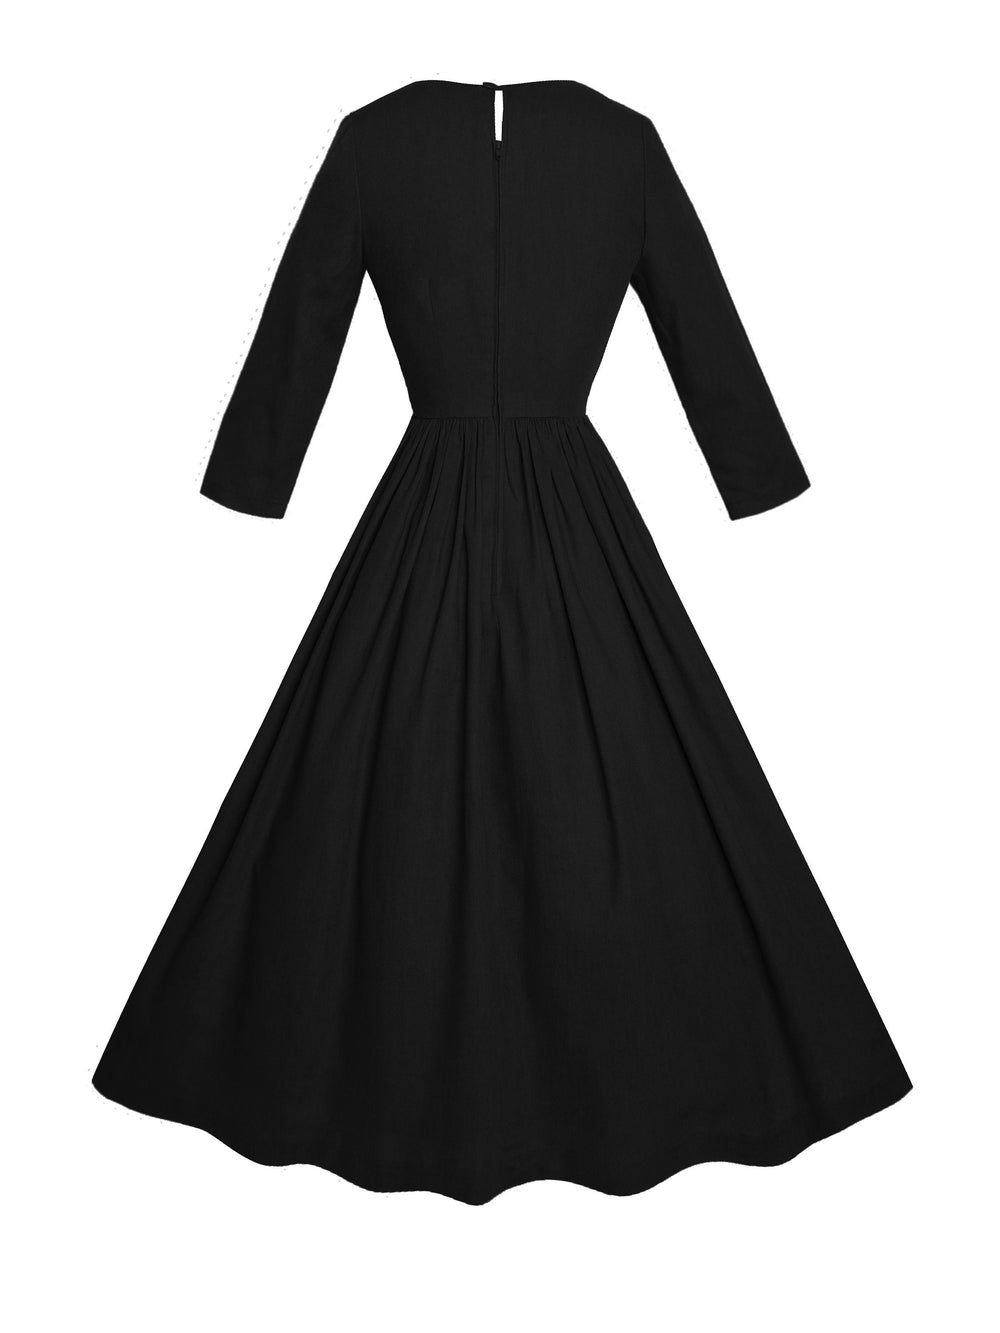 MTO - Marianne Dress in Midnight Black Linen